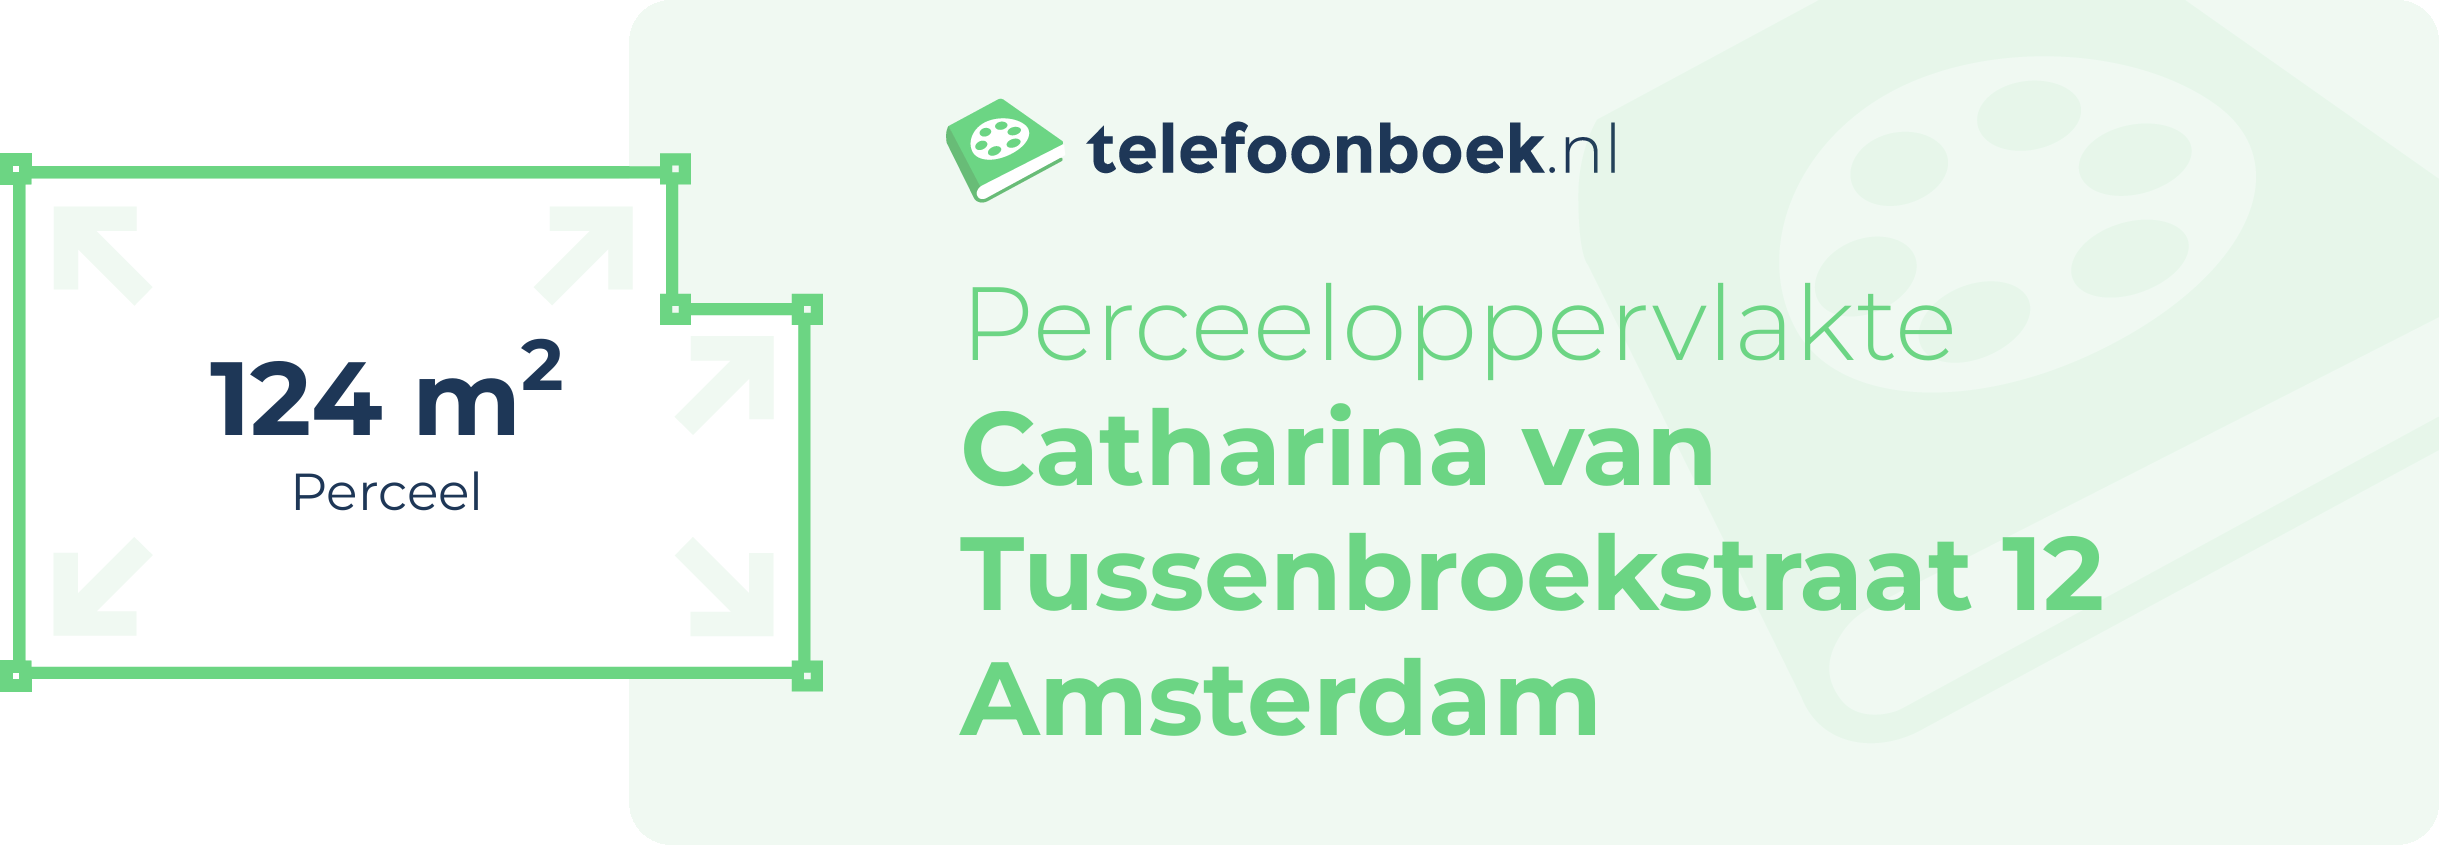 Perceeloppervlakte Catharina Van Tussenbroekstraat 12 Amsterdam